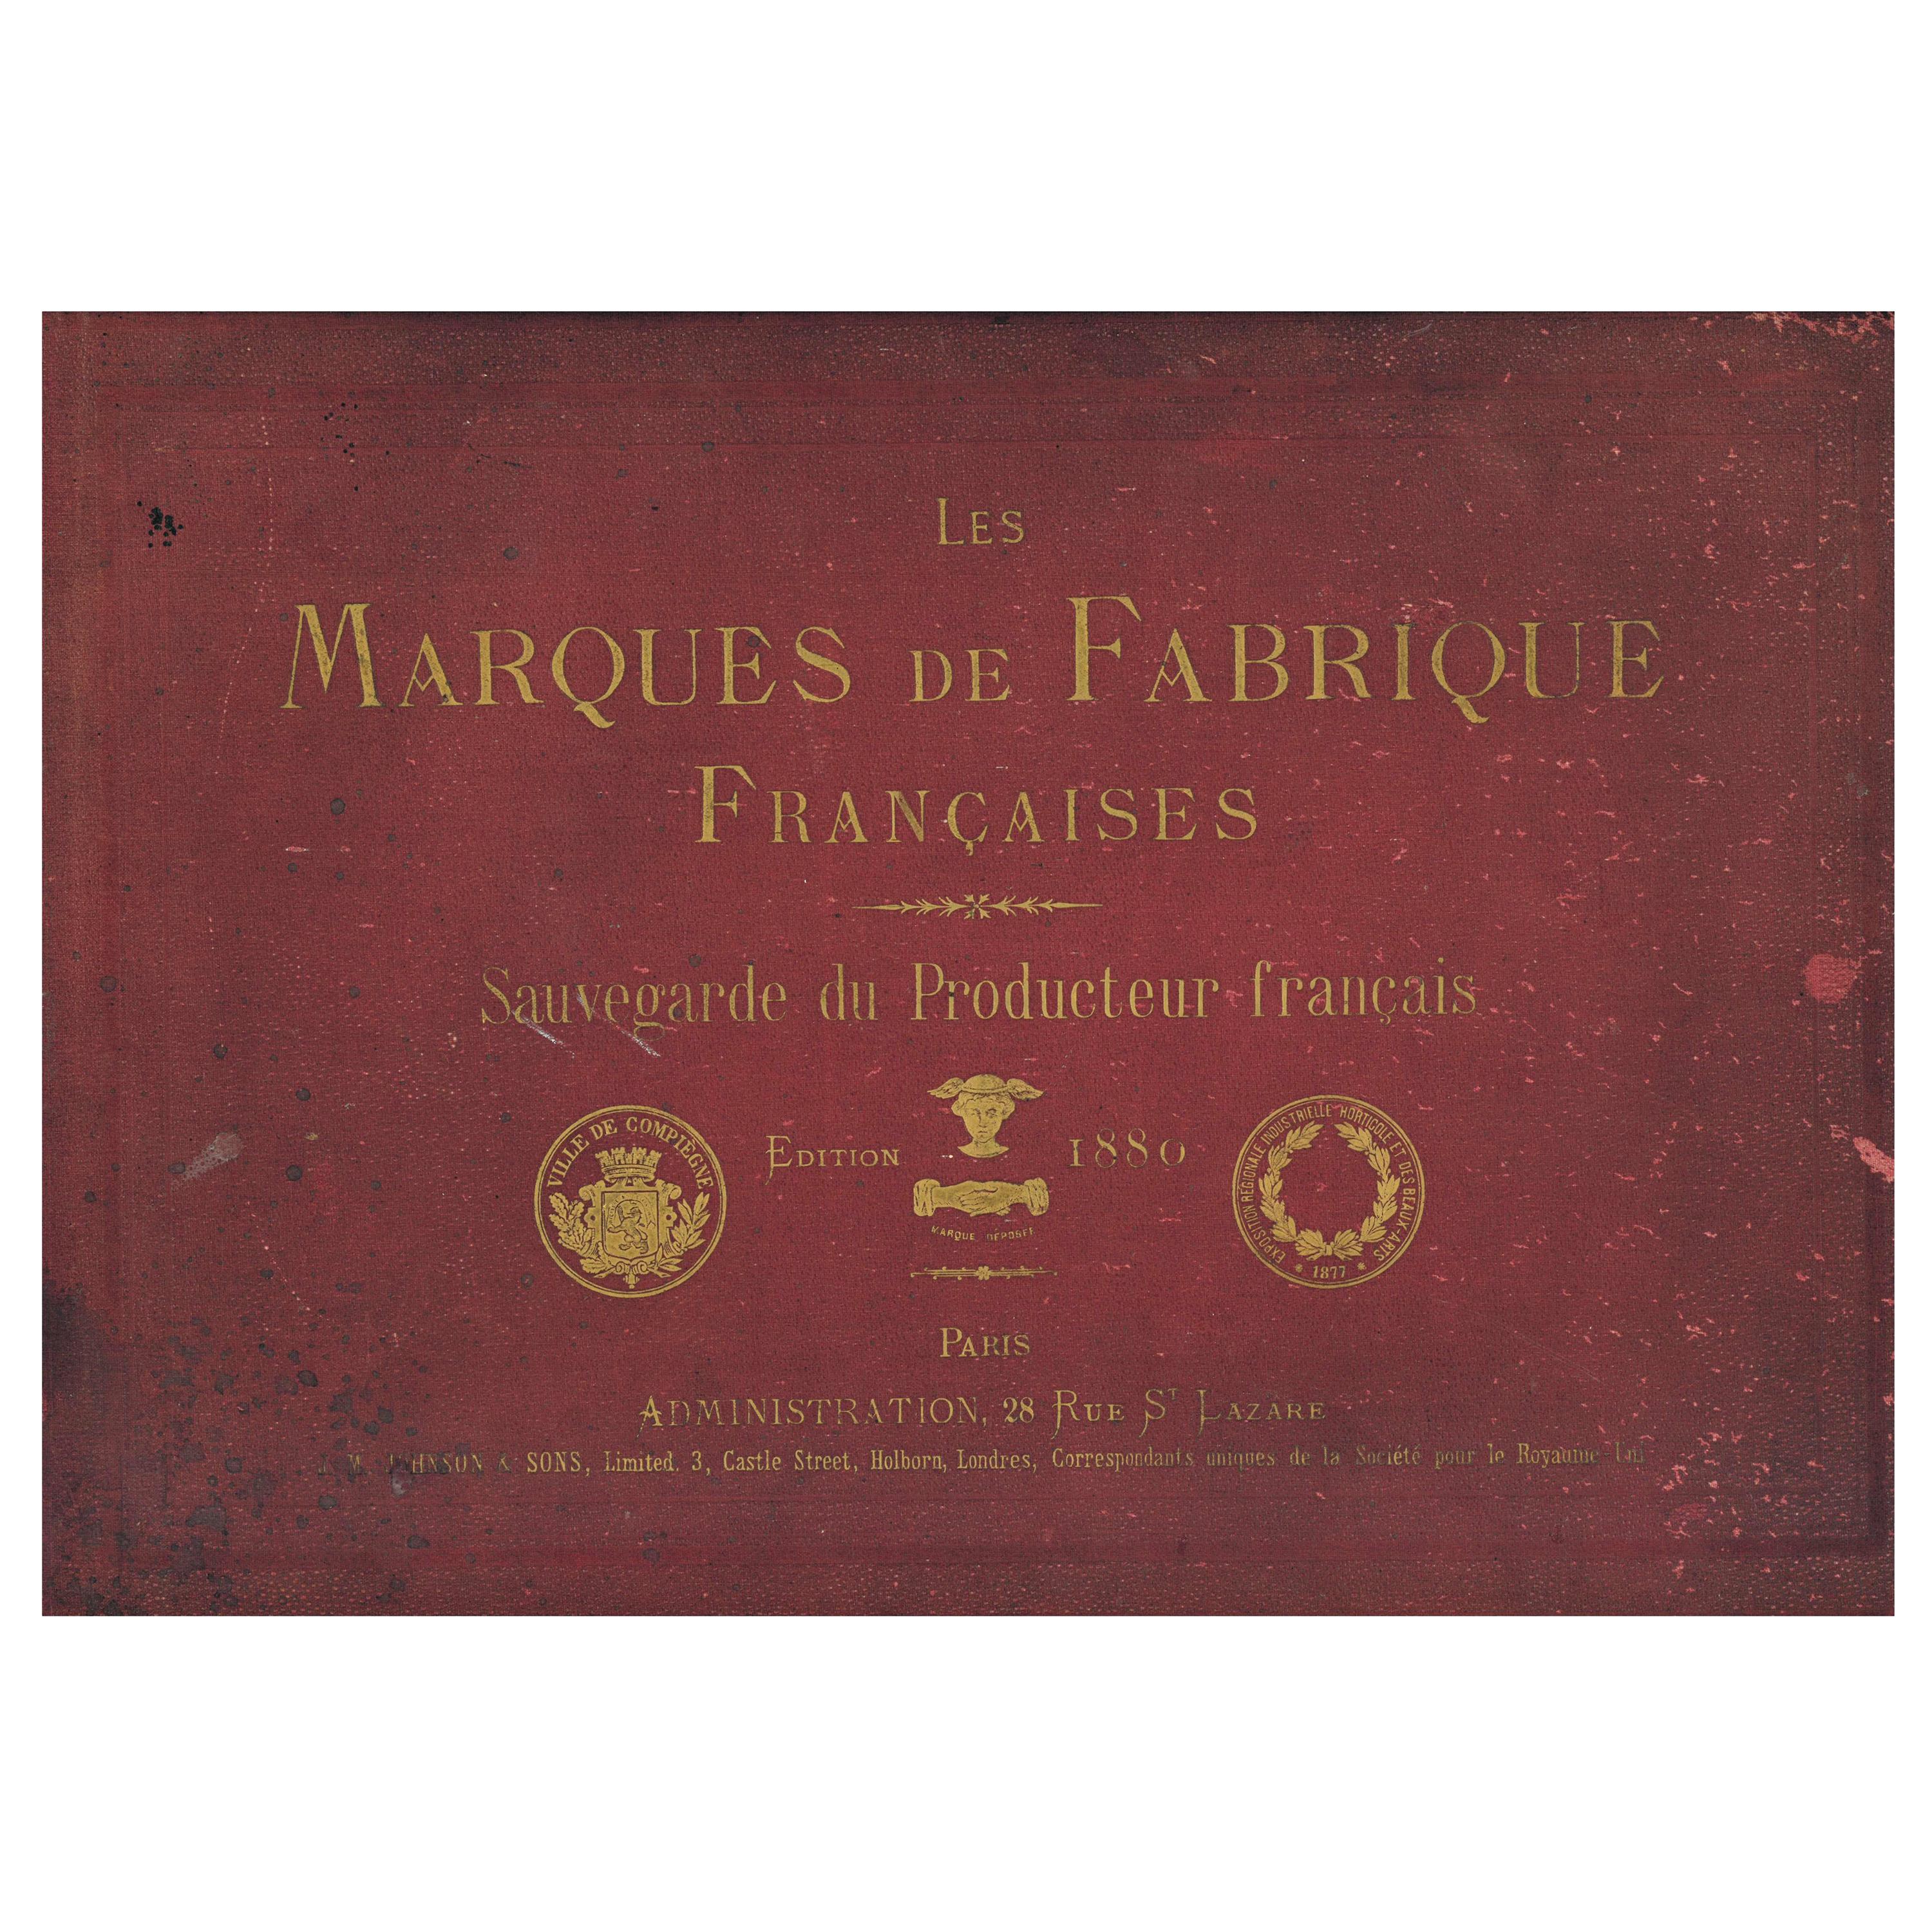 Les Marques de Fabrique Francaises (Book) For Sale